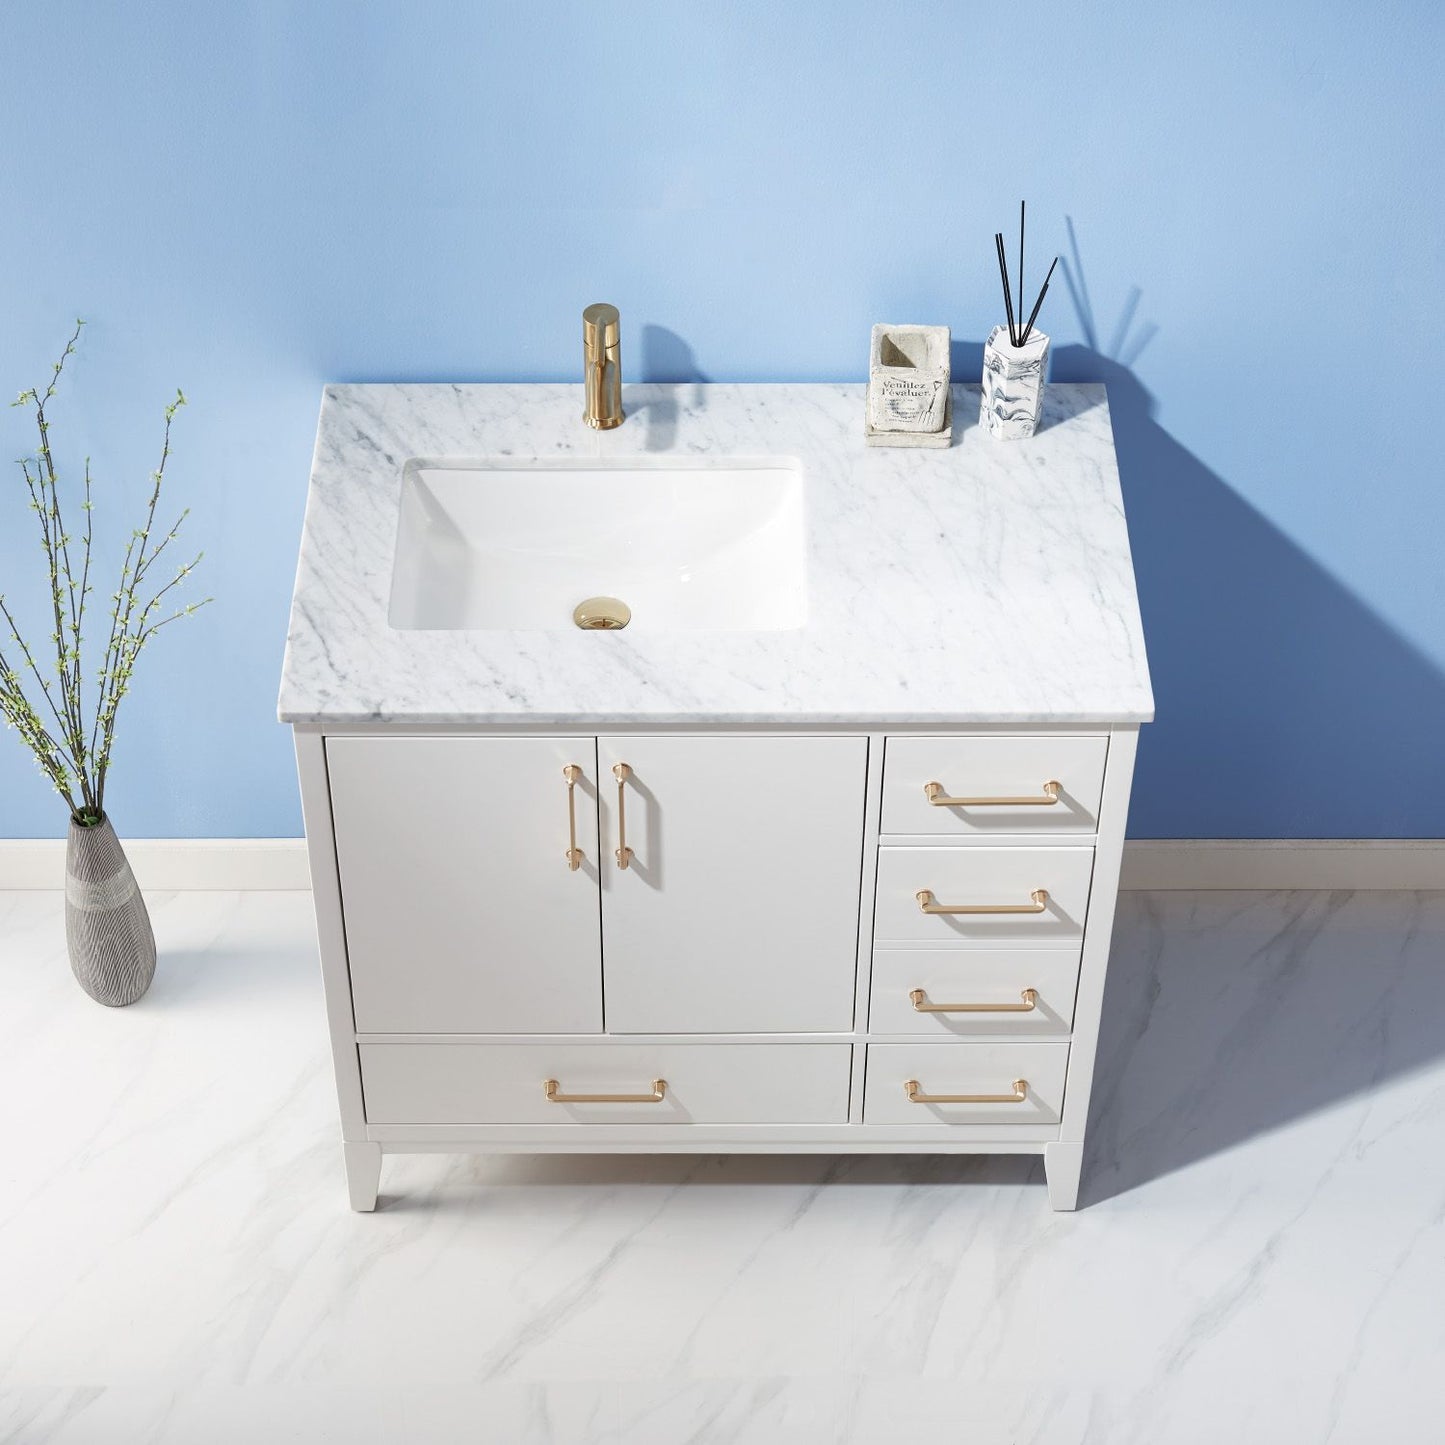 Altair Sutton 36" Single Bathroom Vanity Set Countertop without Mirror - Luxe Bathroom Vanities